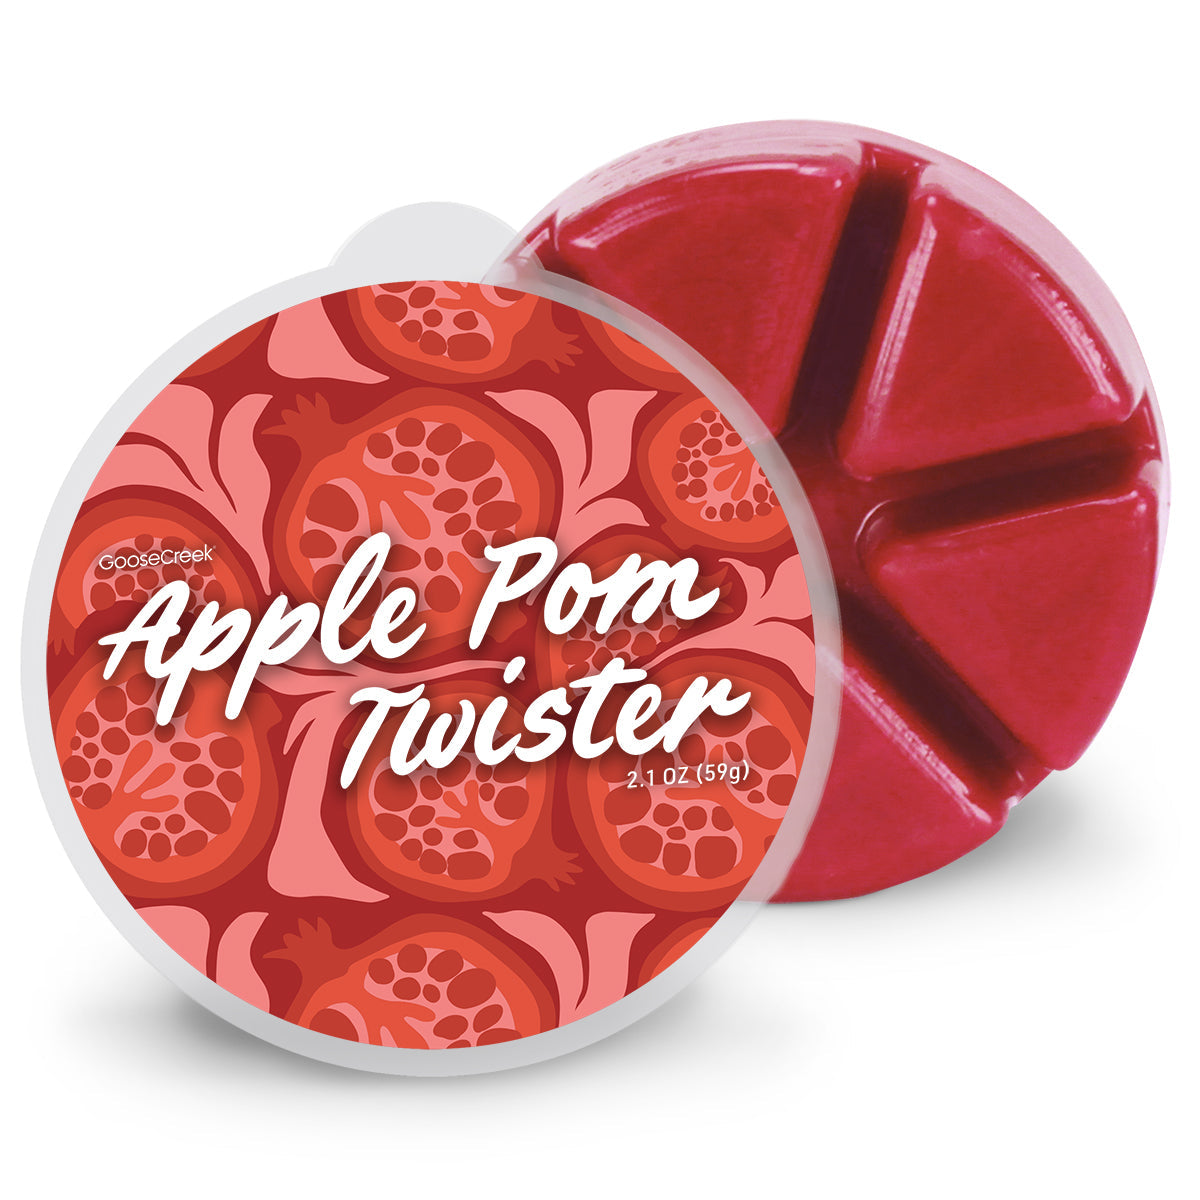 Apple Pom Twister Wax Melt